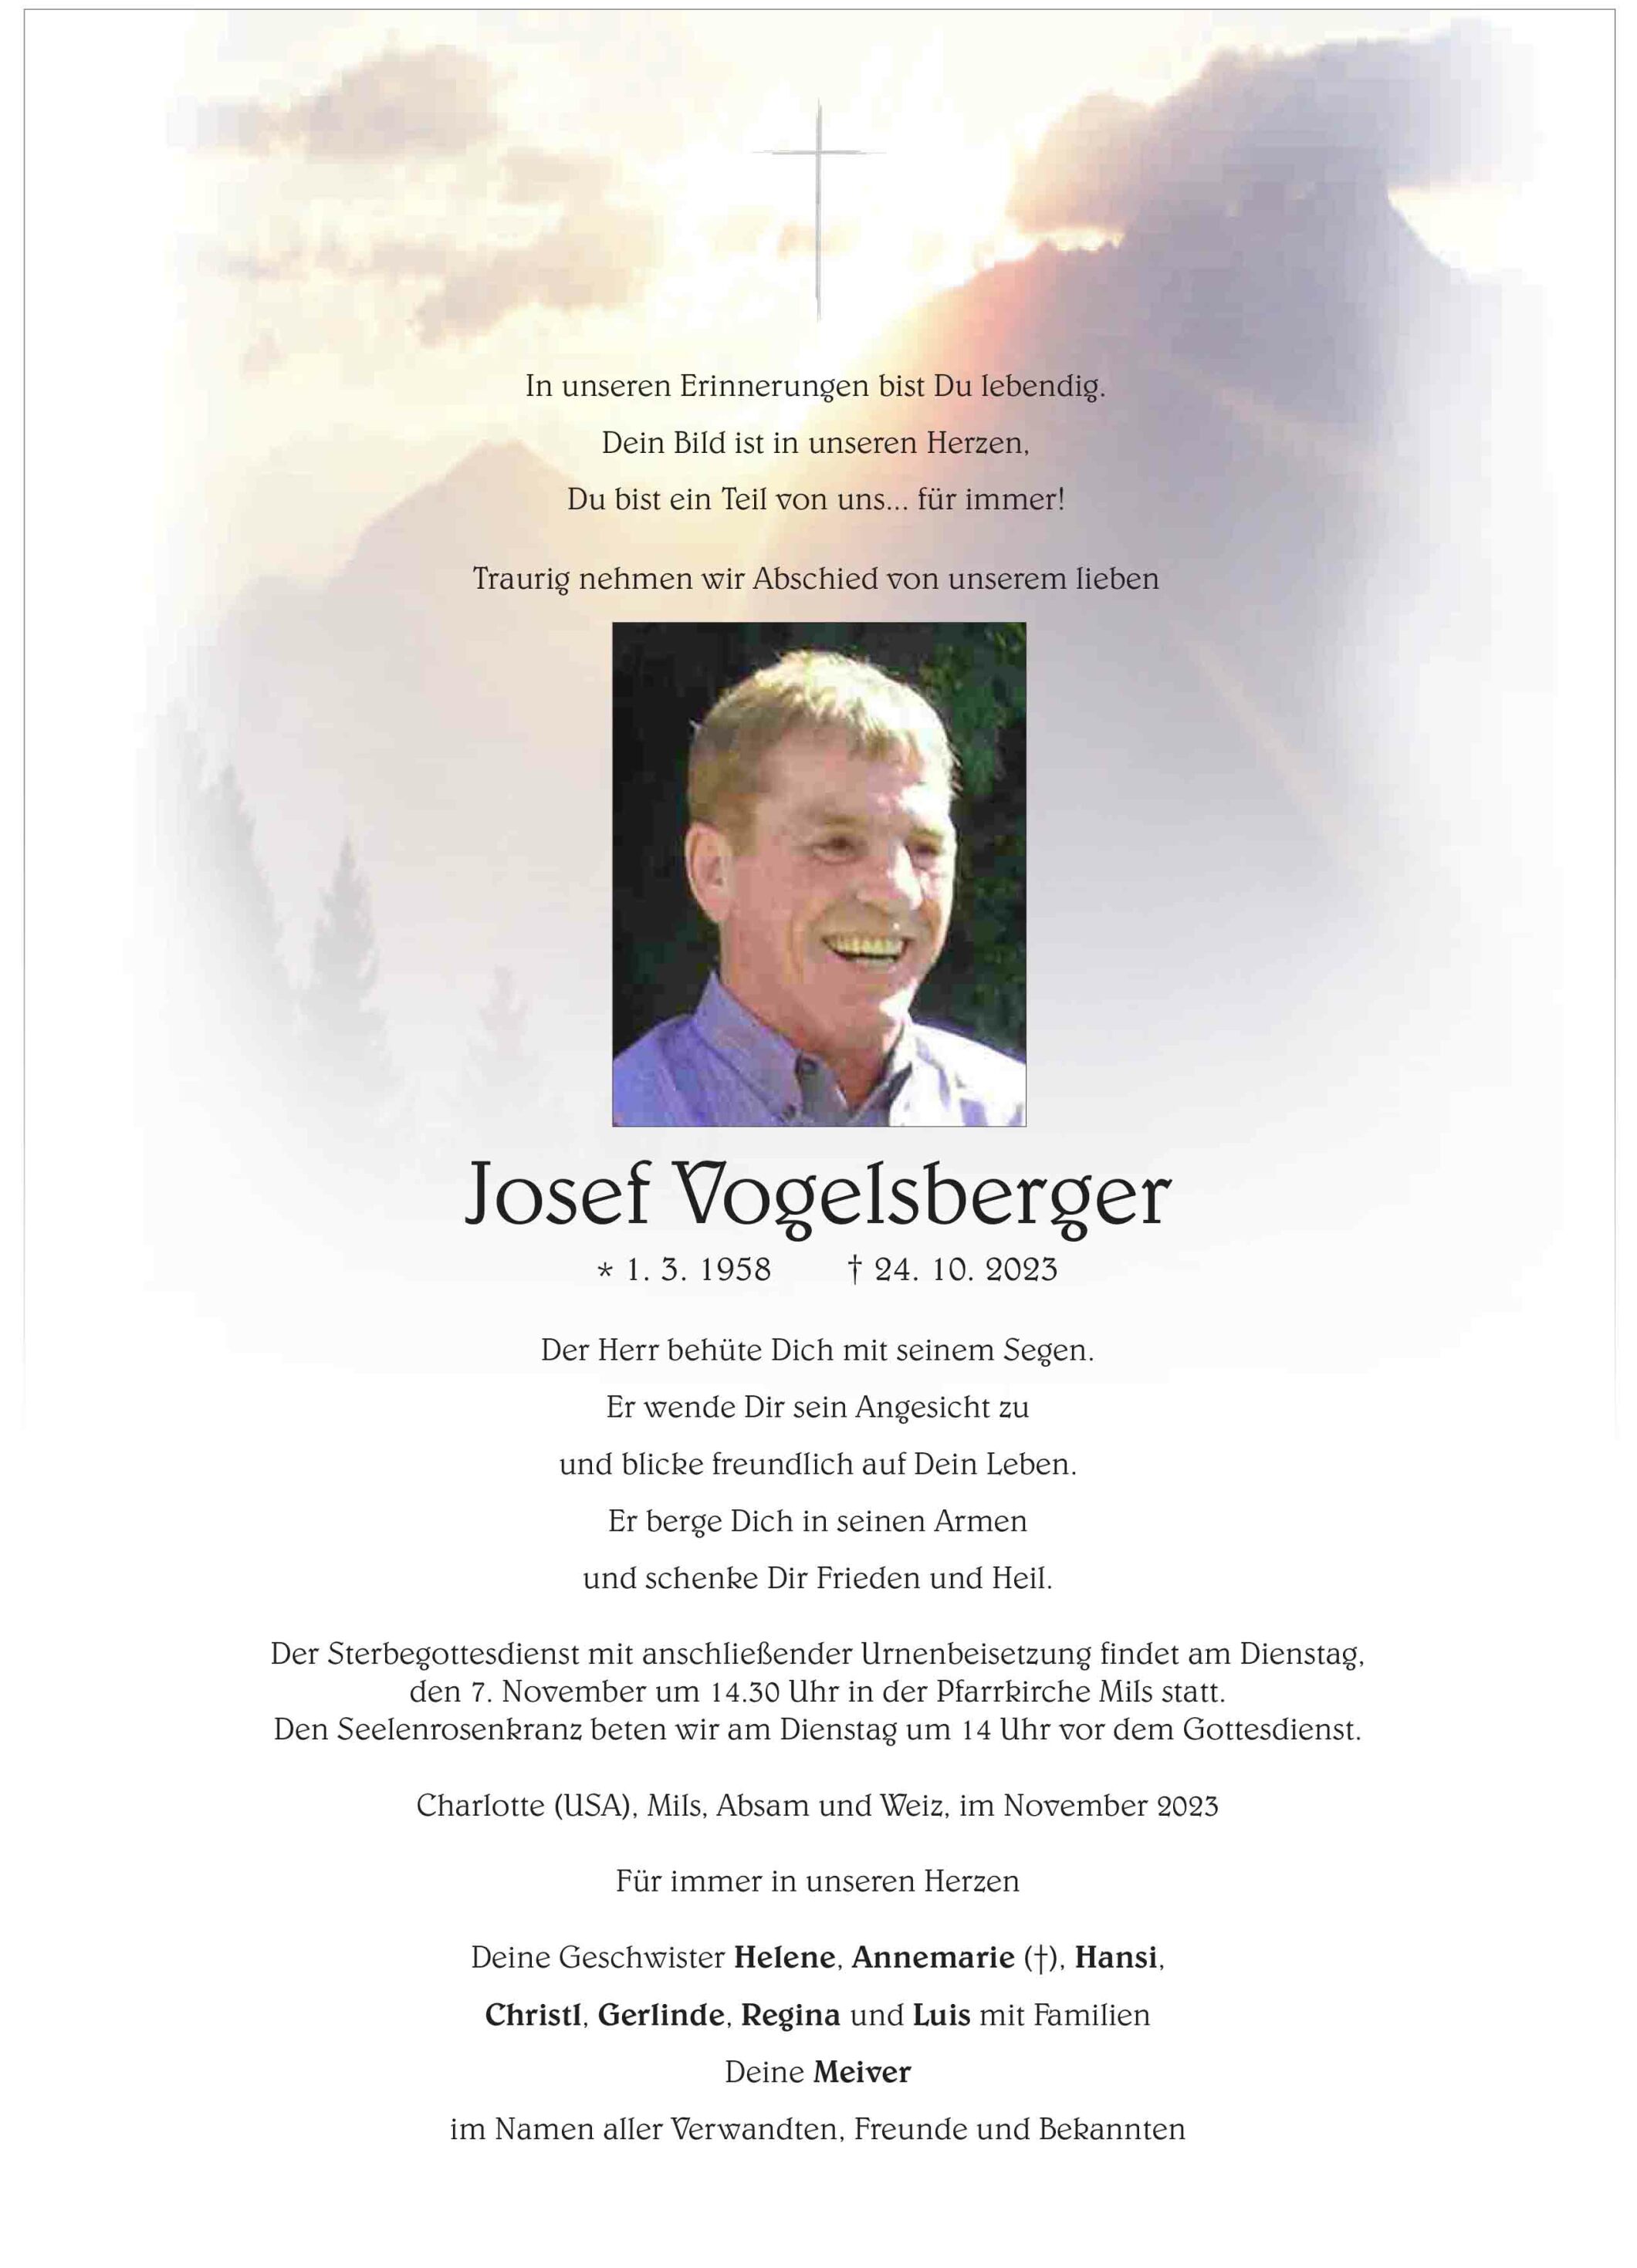 Josef Vogelsberger